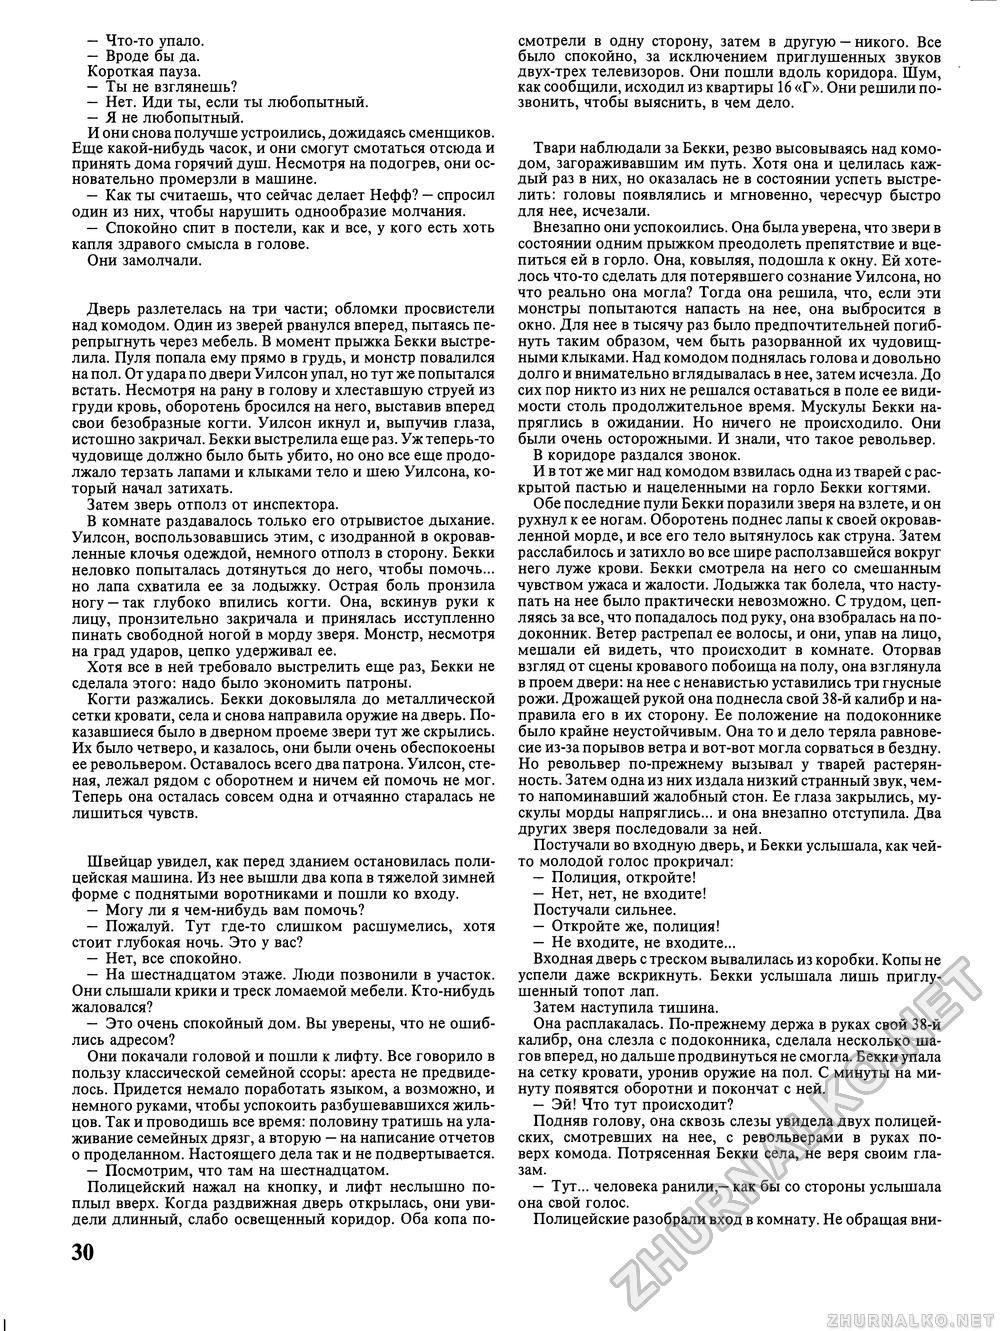 Вокруг света 1993-06, страница 32